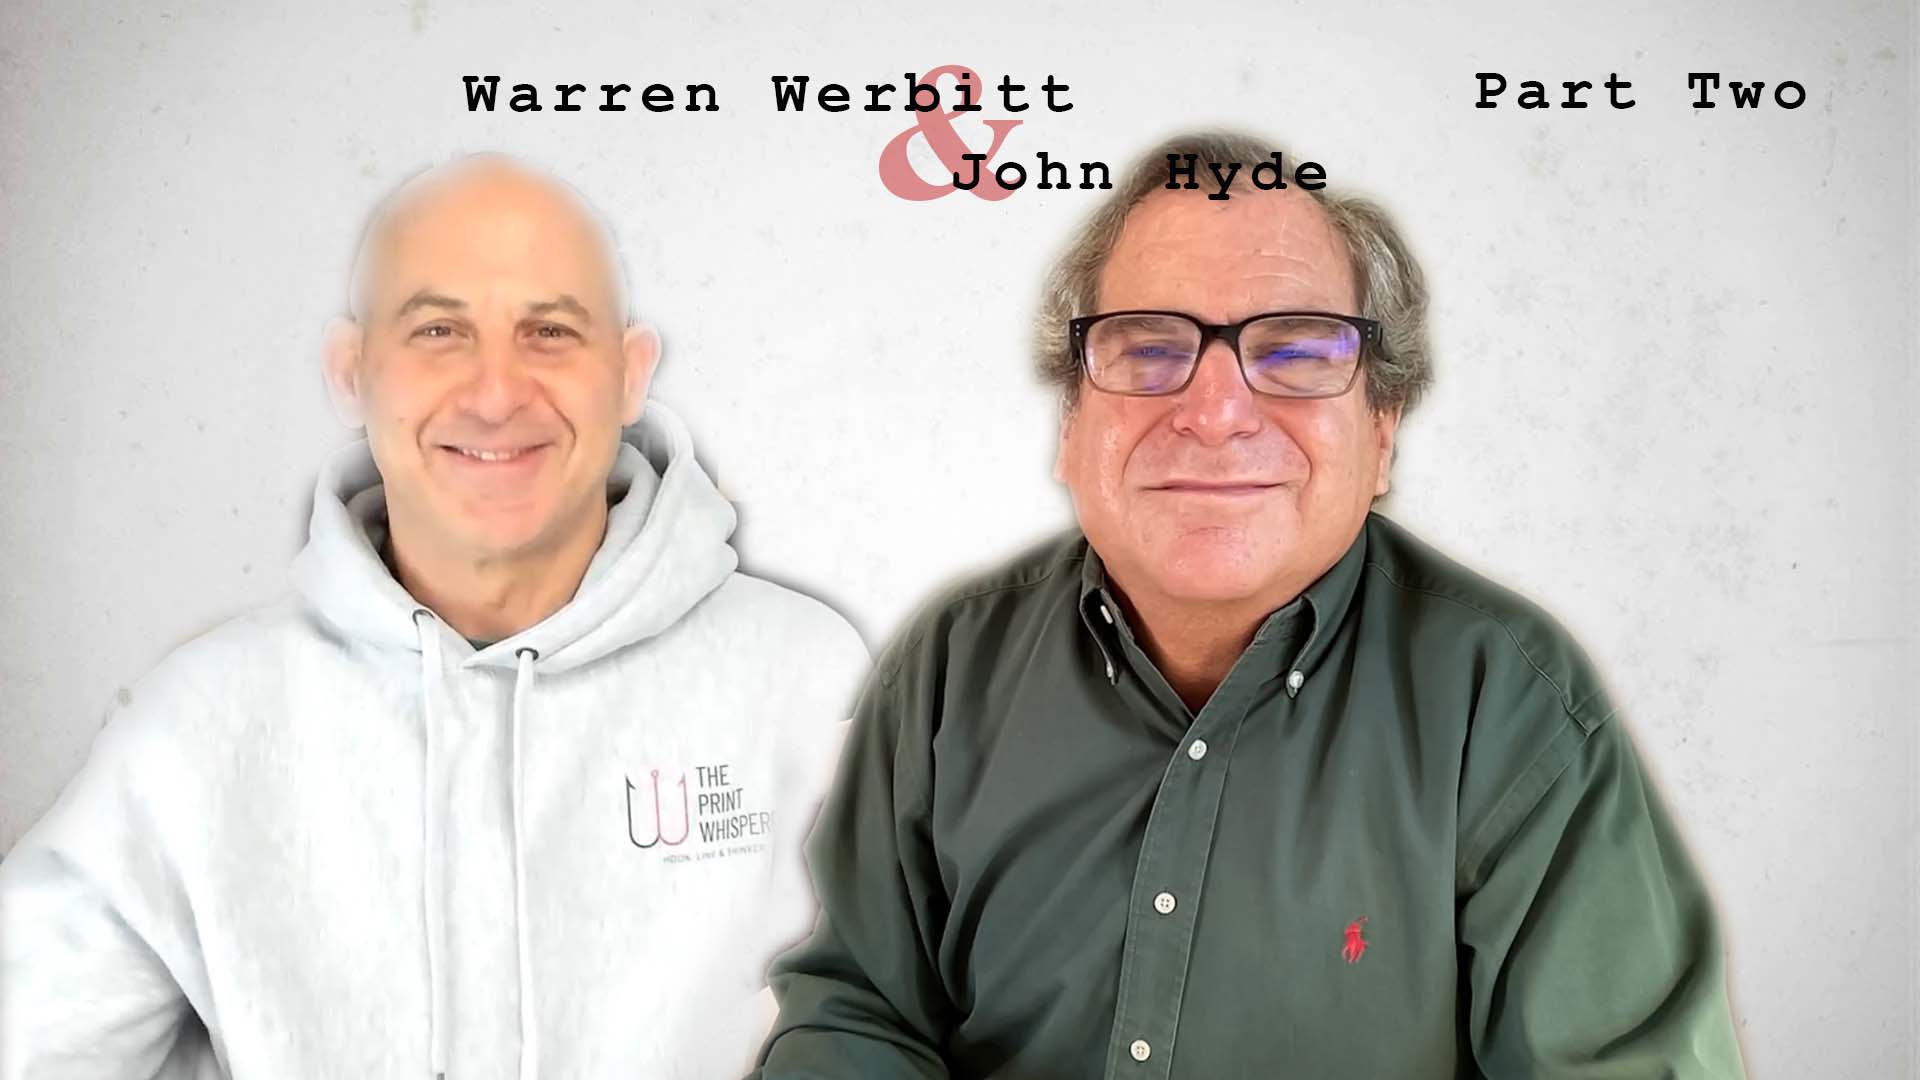 Video preview: Warren Werbitt Goes Printer to Financial Advisor with John Hyde, Part 2